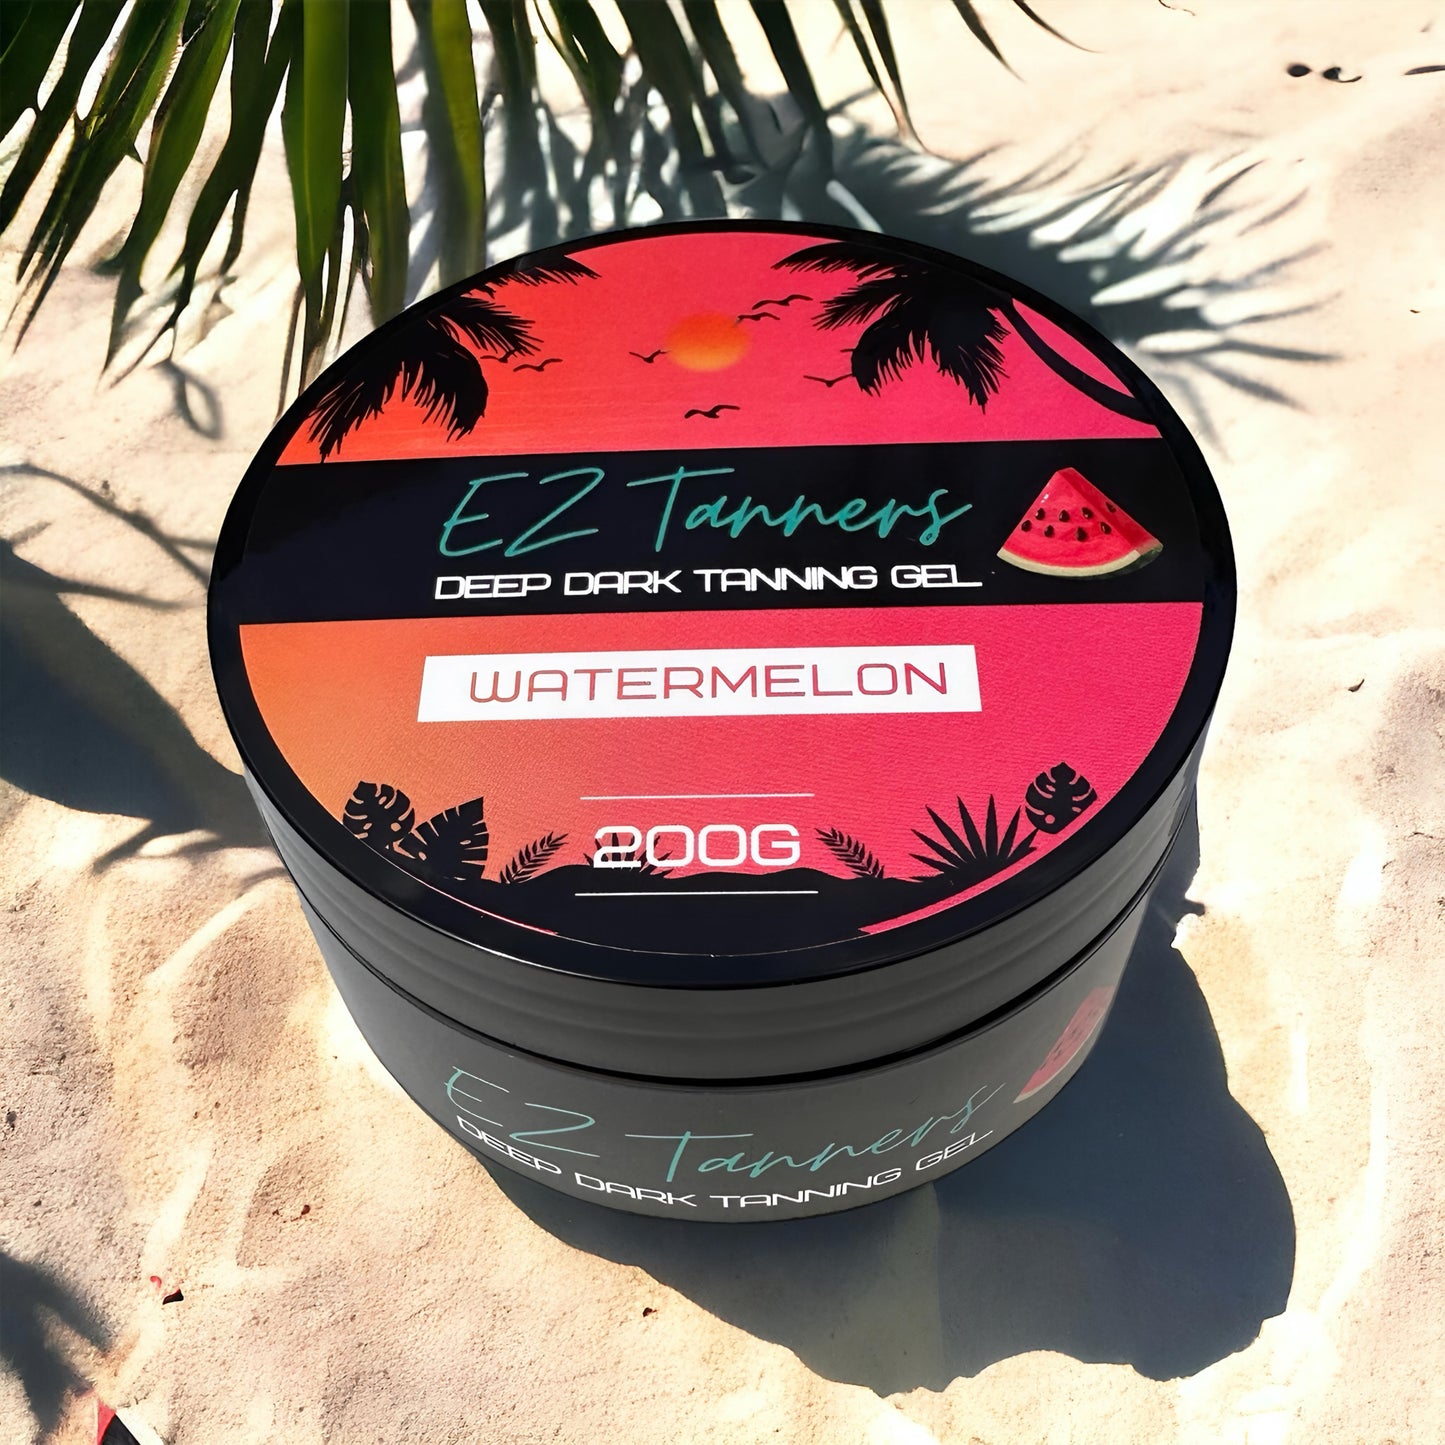 .EZ Tanners - Deep Dark Tanning Gel - Watermelon - 200g